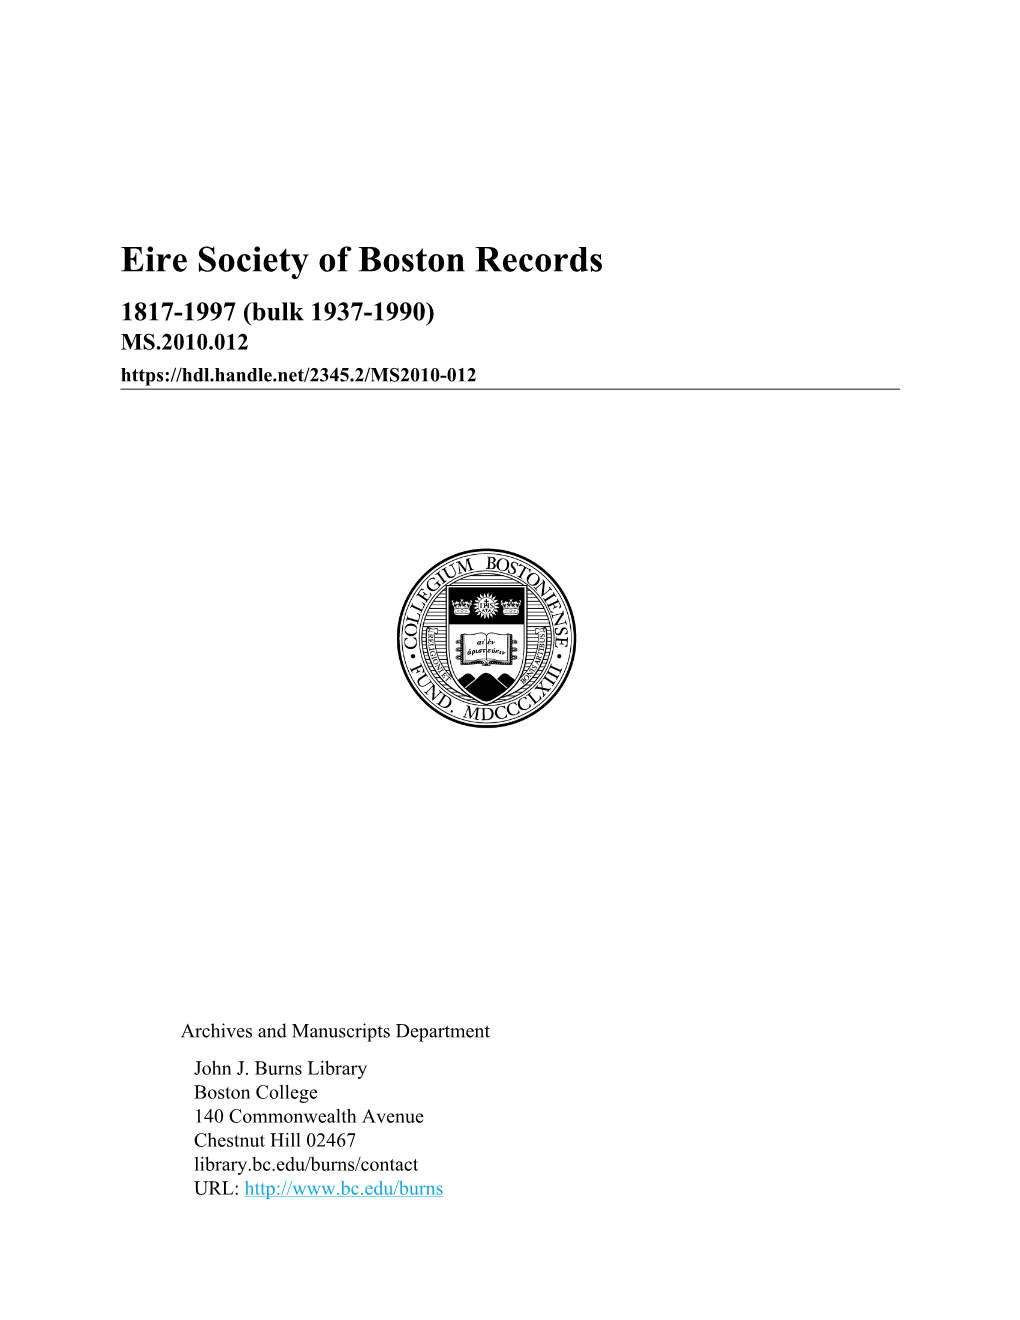 Eire Society of Boston Records 1817-1997 (Bulk 1937-1990) MS.2010.012